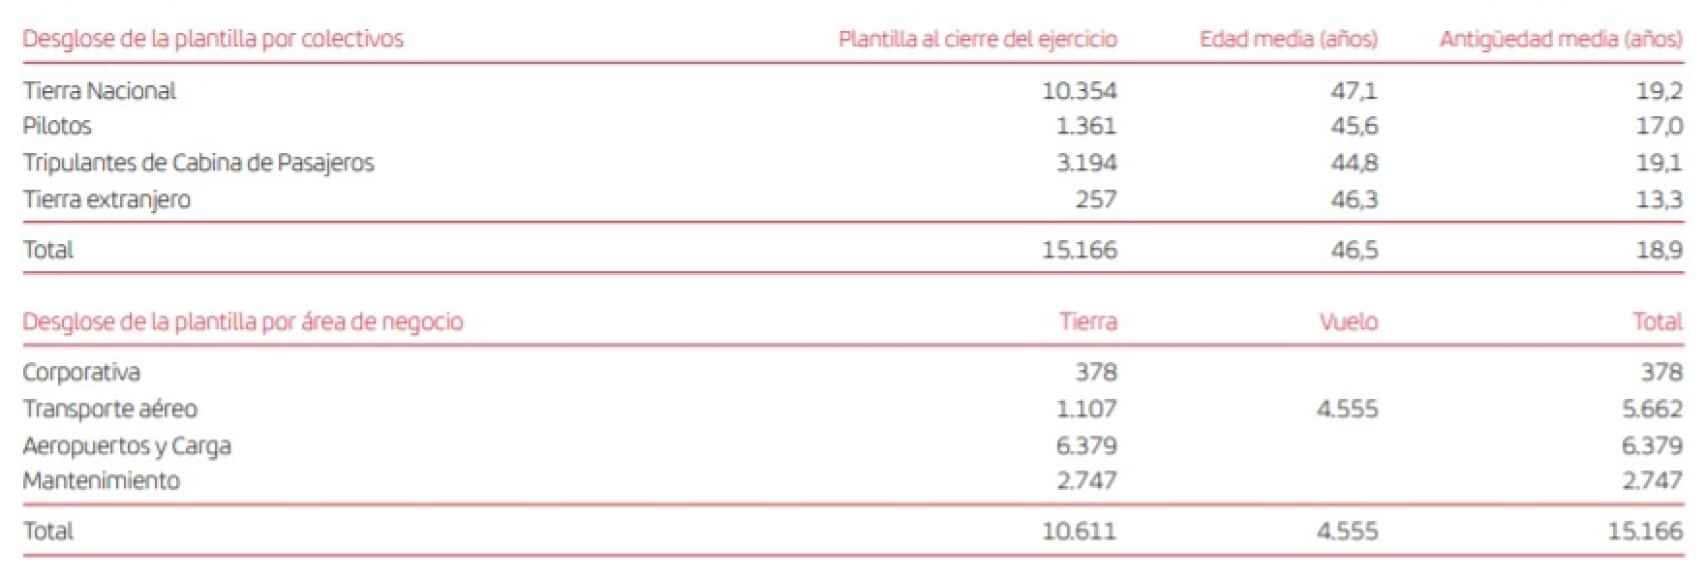 Distribución de la plantilla de Iberia en 2020. Fuente: Iberia.